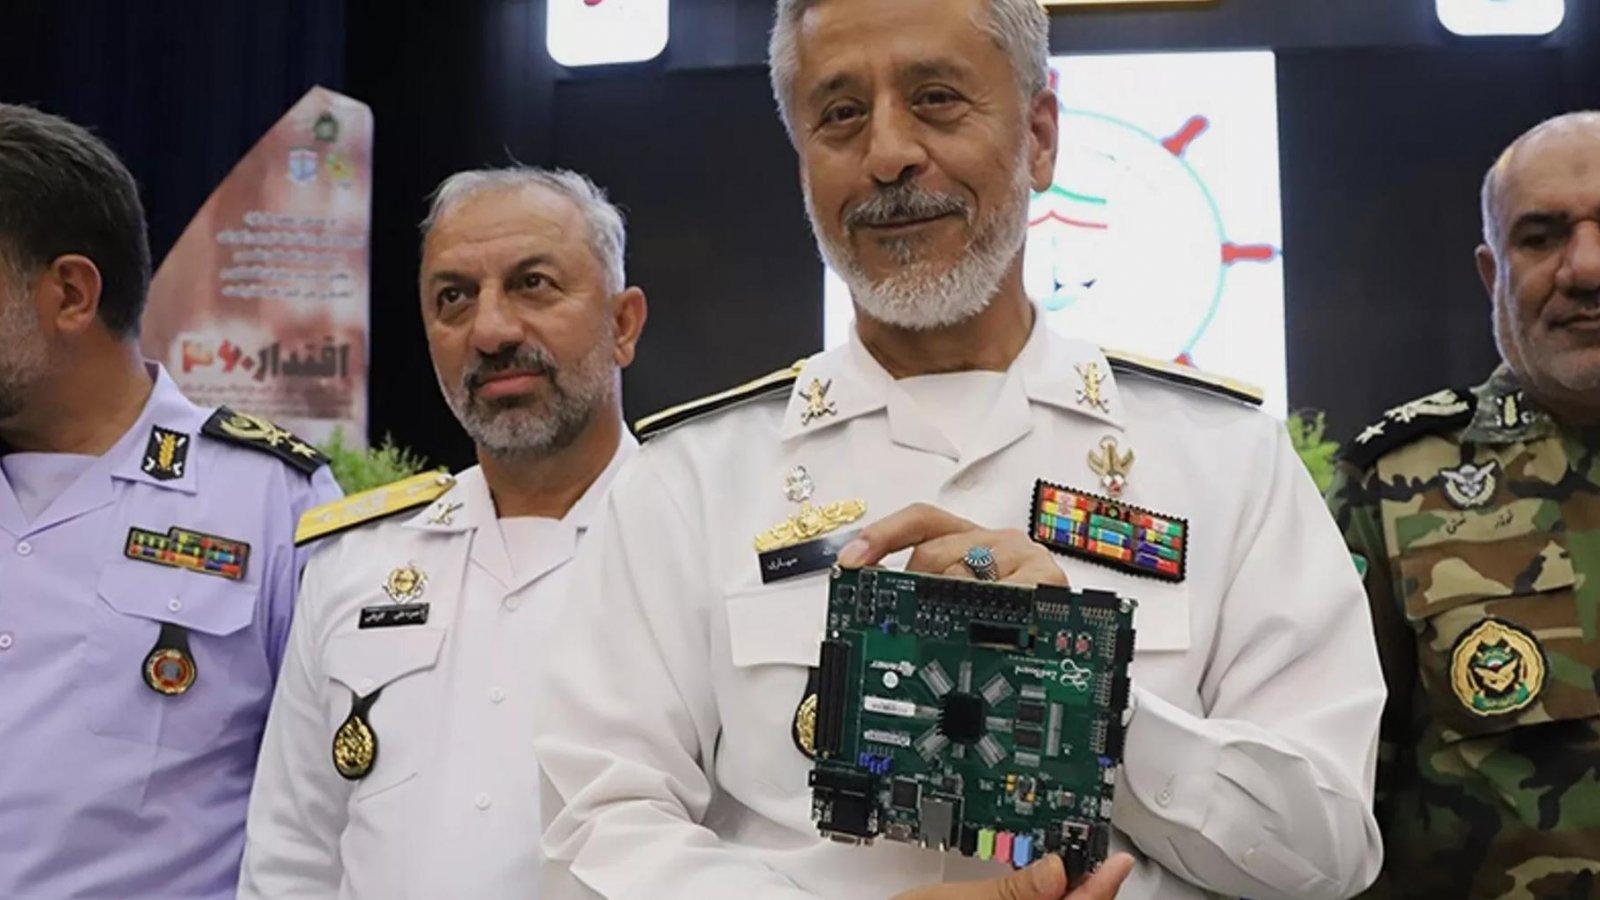 L'Iran ha presentato il suo nuovo computer quantistico, ma sembra essere una scheda ARM a basso costo